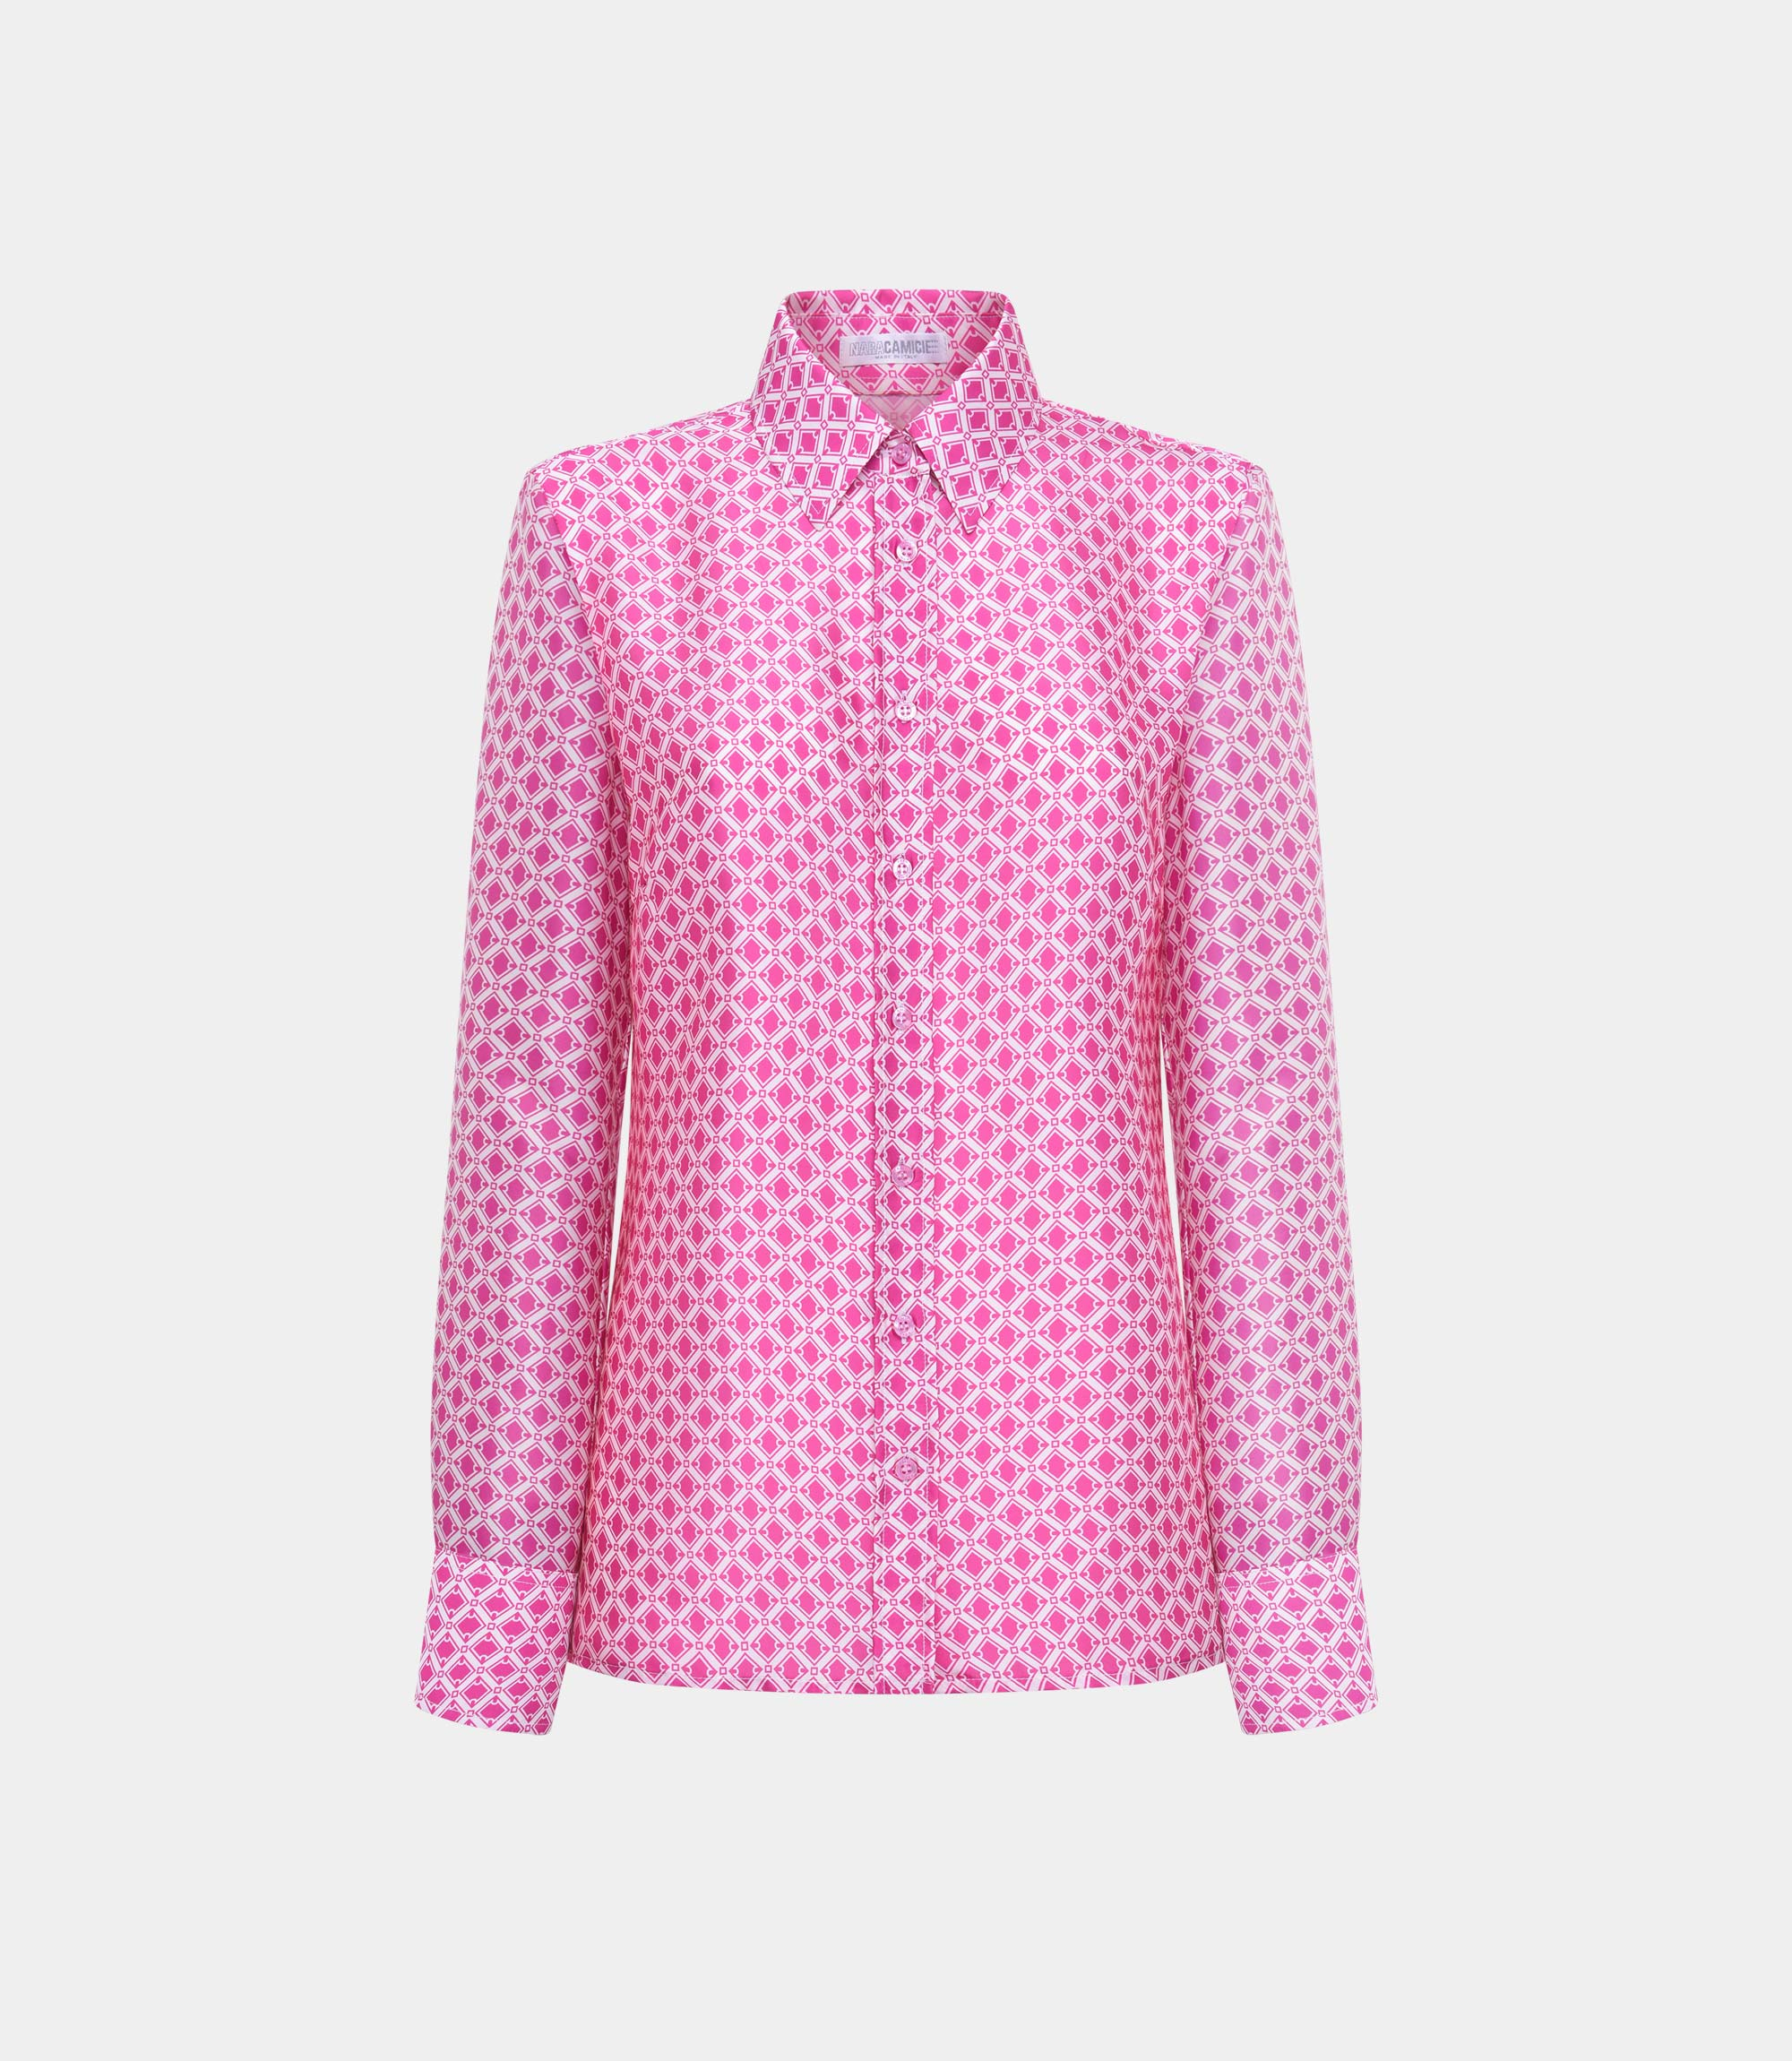 Women's printed blouse - SHIRT - NaraMilano